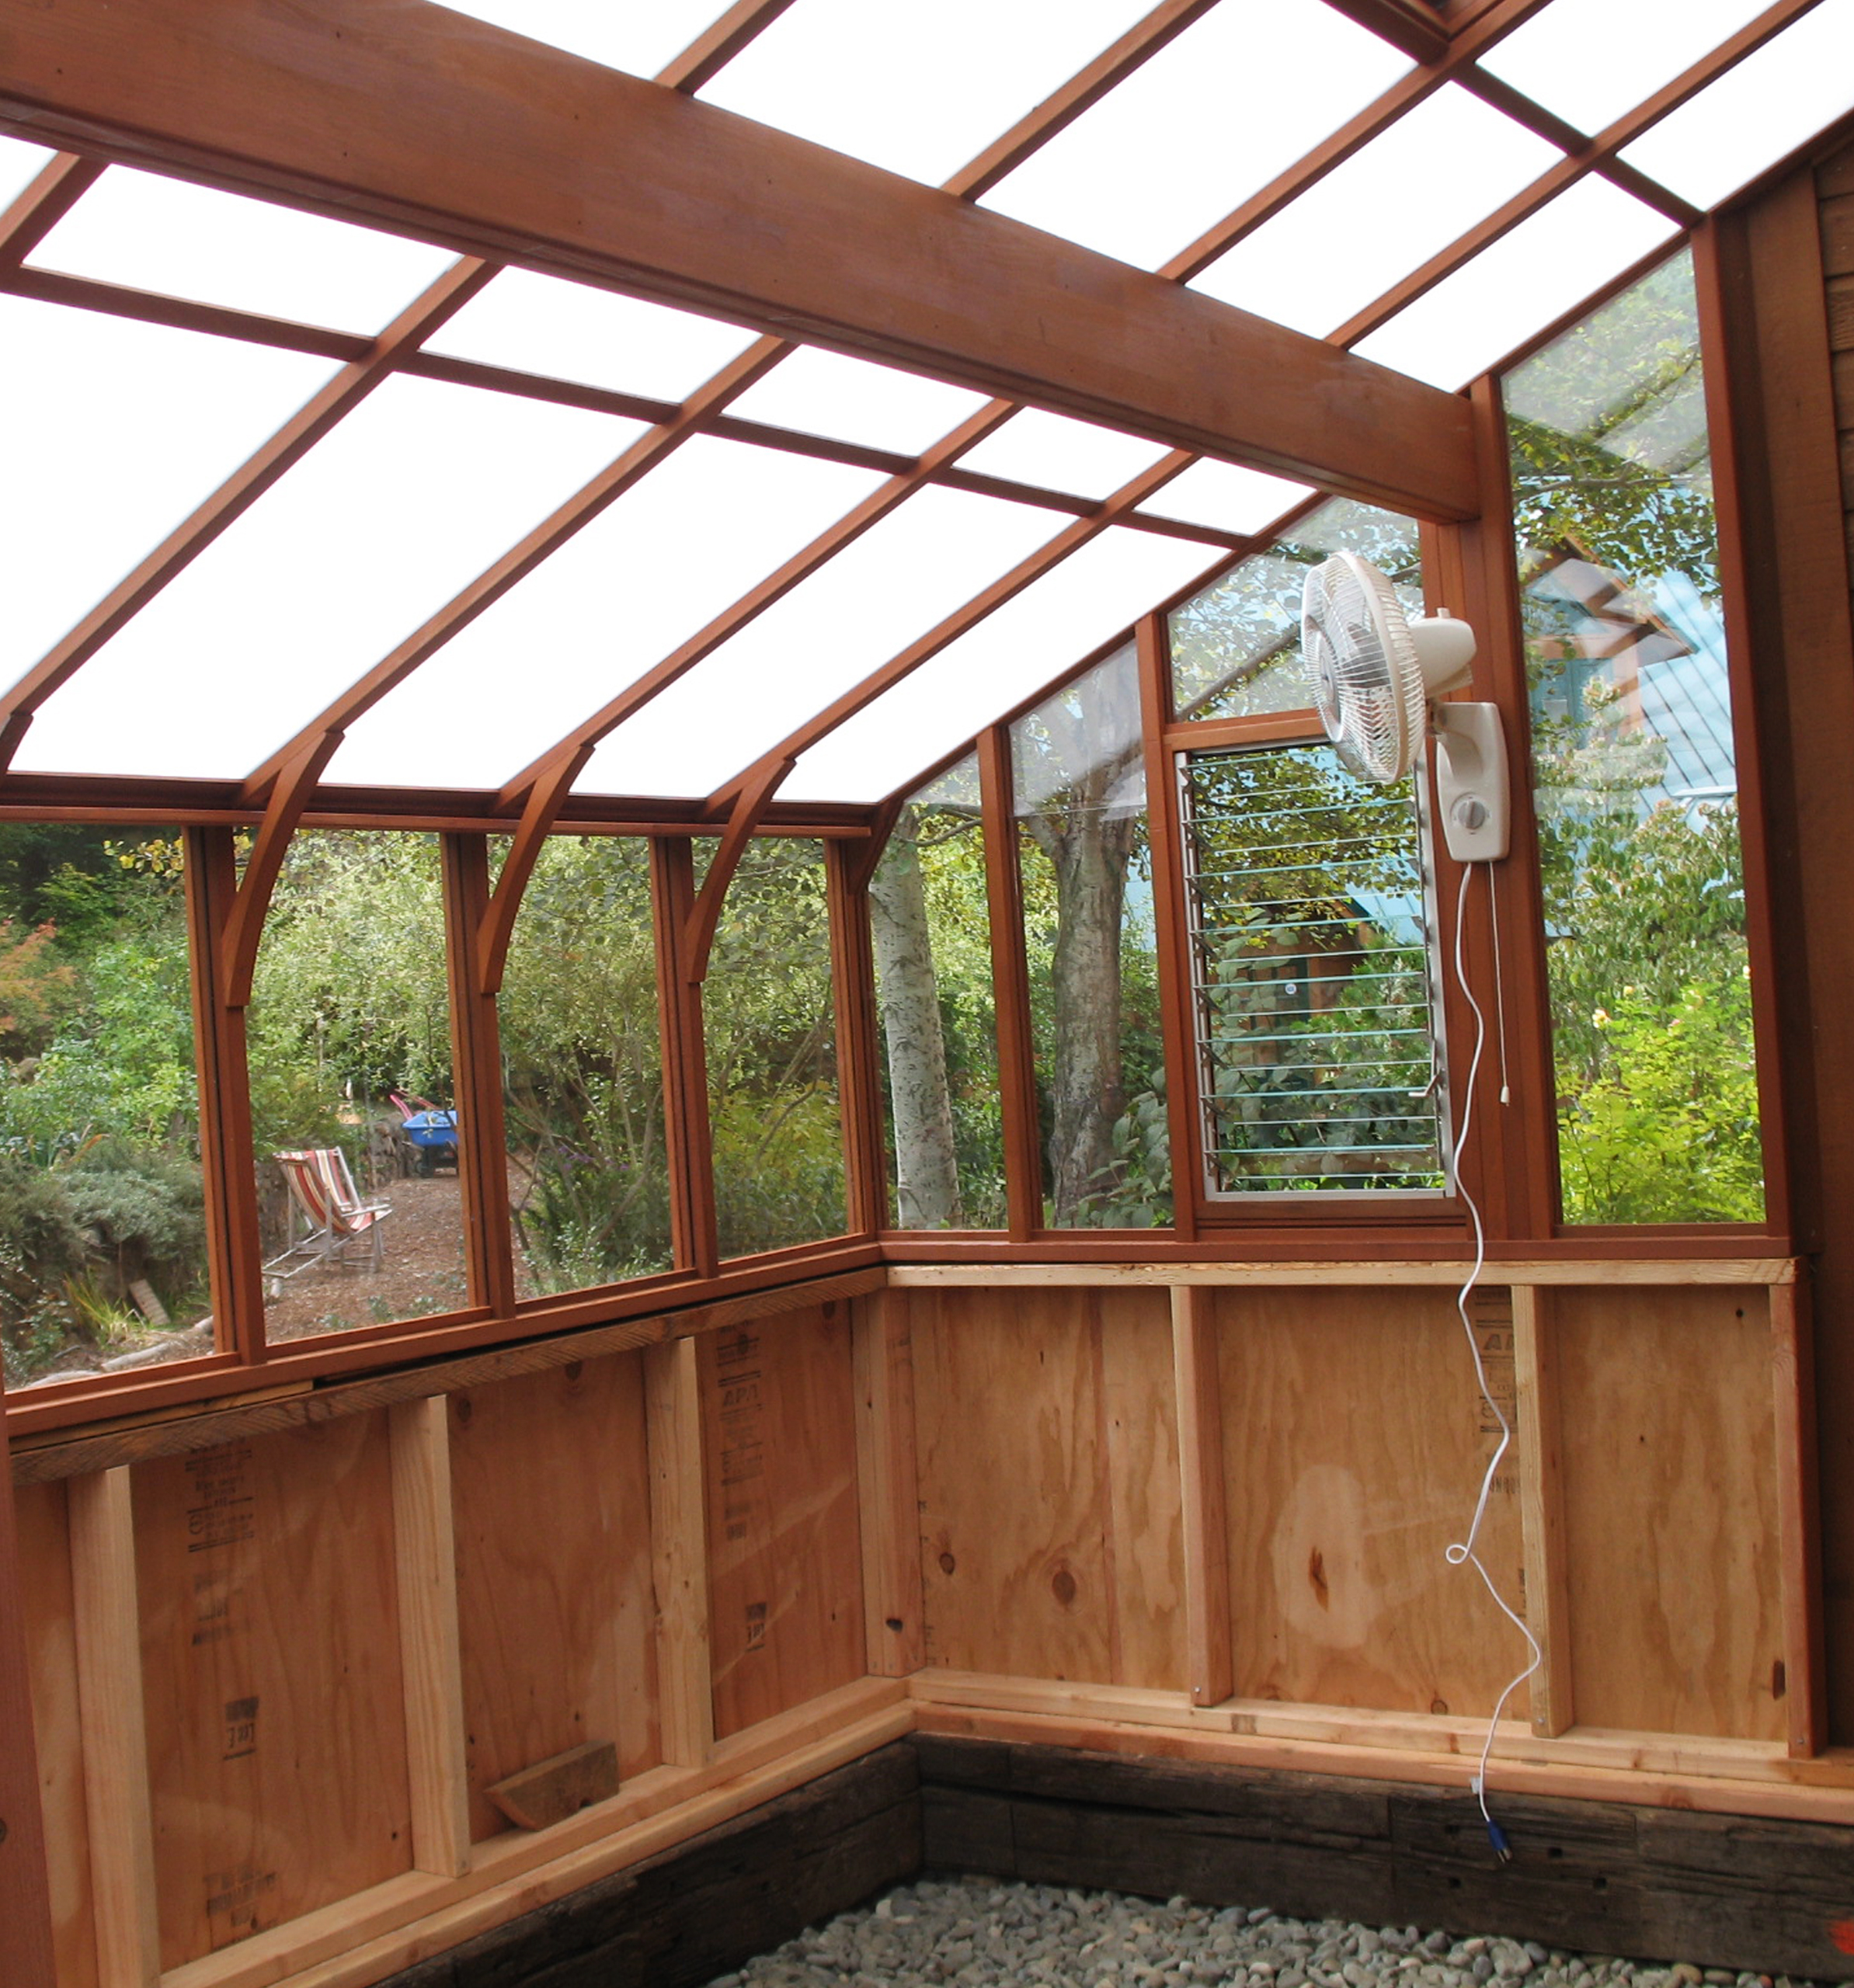 Tudor Lean-to Greenhouse Kits - Sturdi-Built Greenhouses